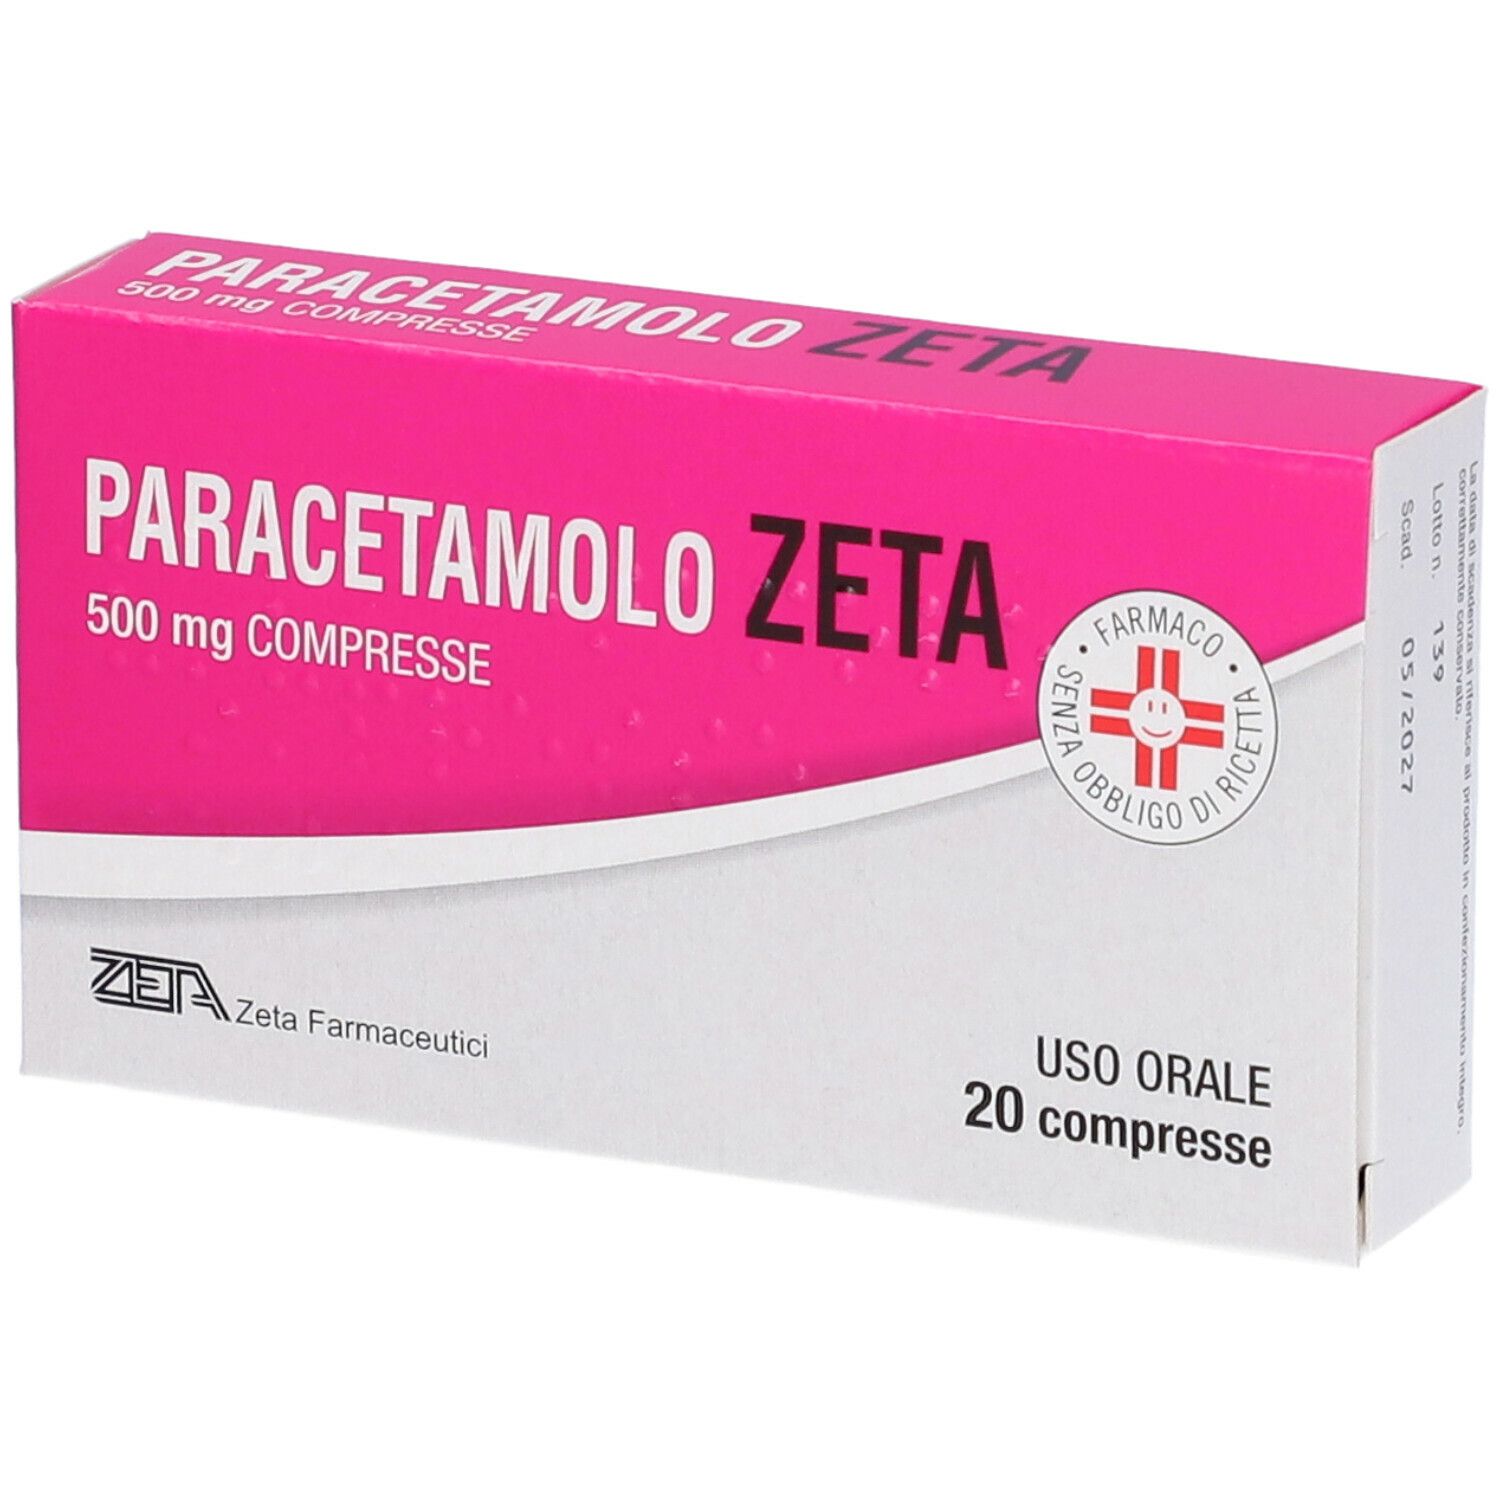 zeta farmaceutici paracetamolo zeta 500 mg compresse